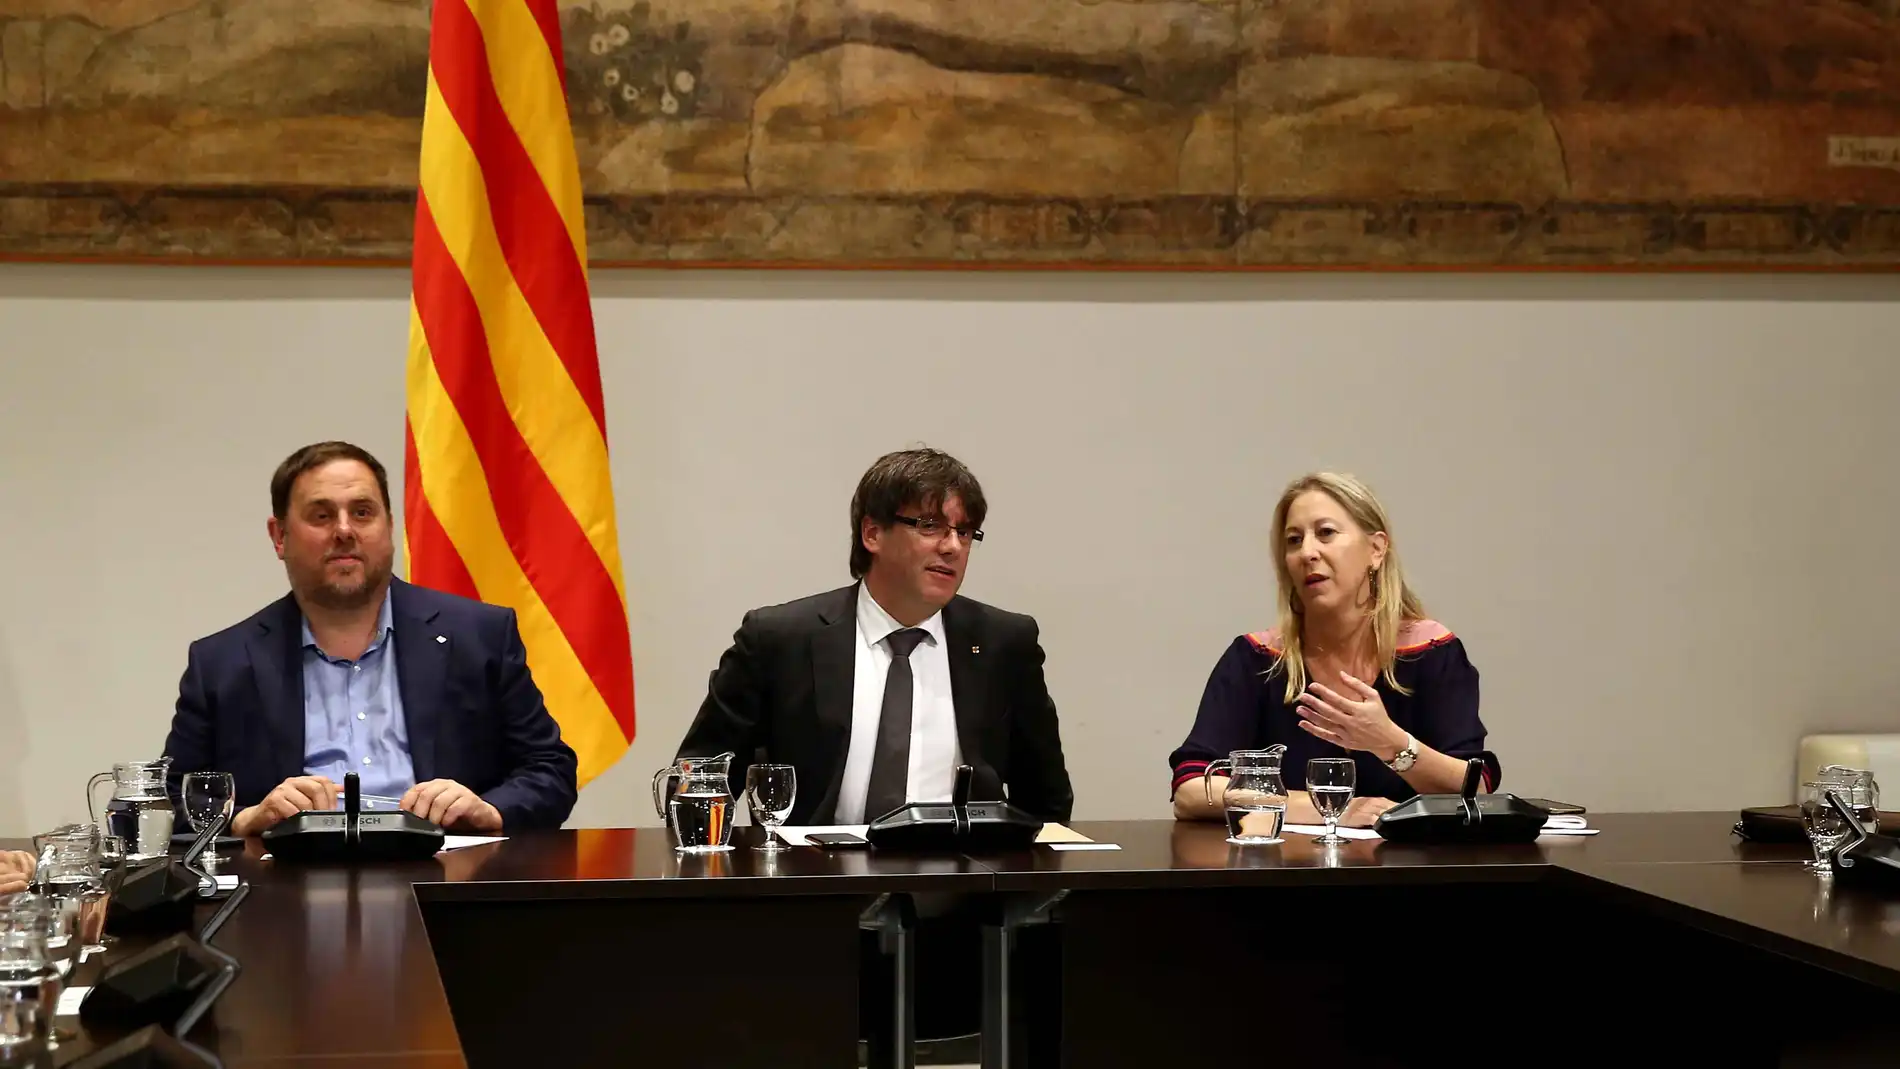 El presidente catalán, Carles Puigdemont (c), junto al vicepresidente del Govern, Oriol Junqueras (i) y la consellera de la Presidencia, Neus Munté